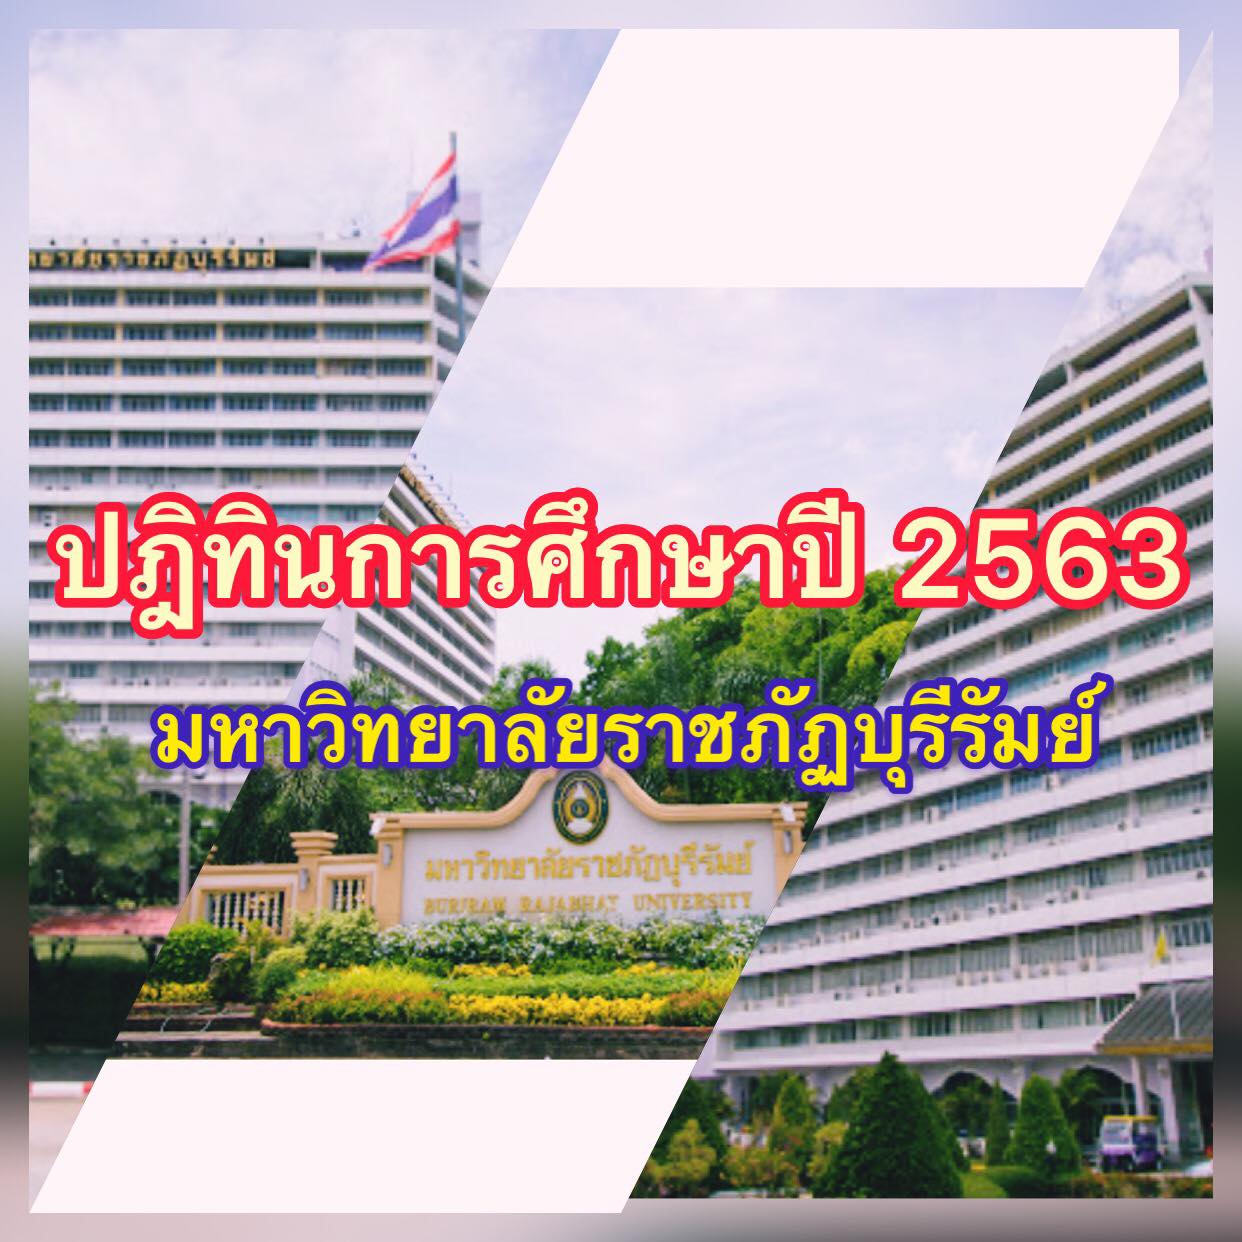 ปฏิทินการศึกษาปี 2563 มหาวิทยาลัยราชภัฏบุรีรัมย์